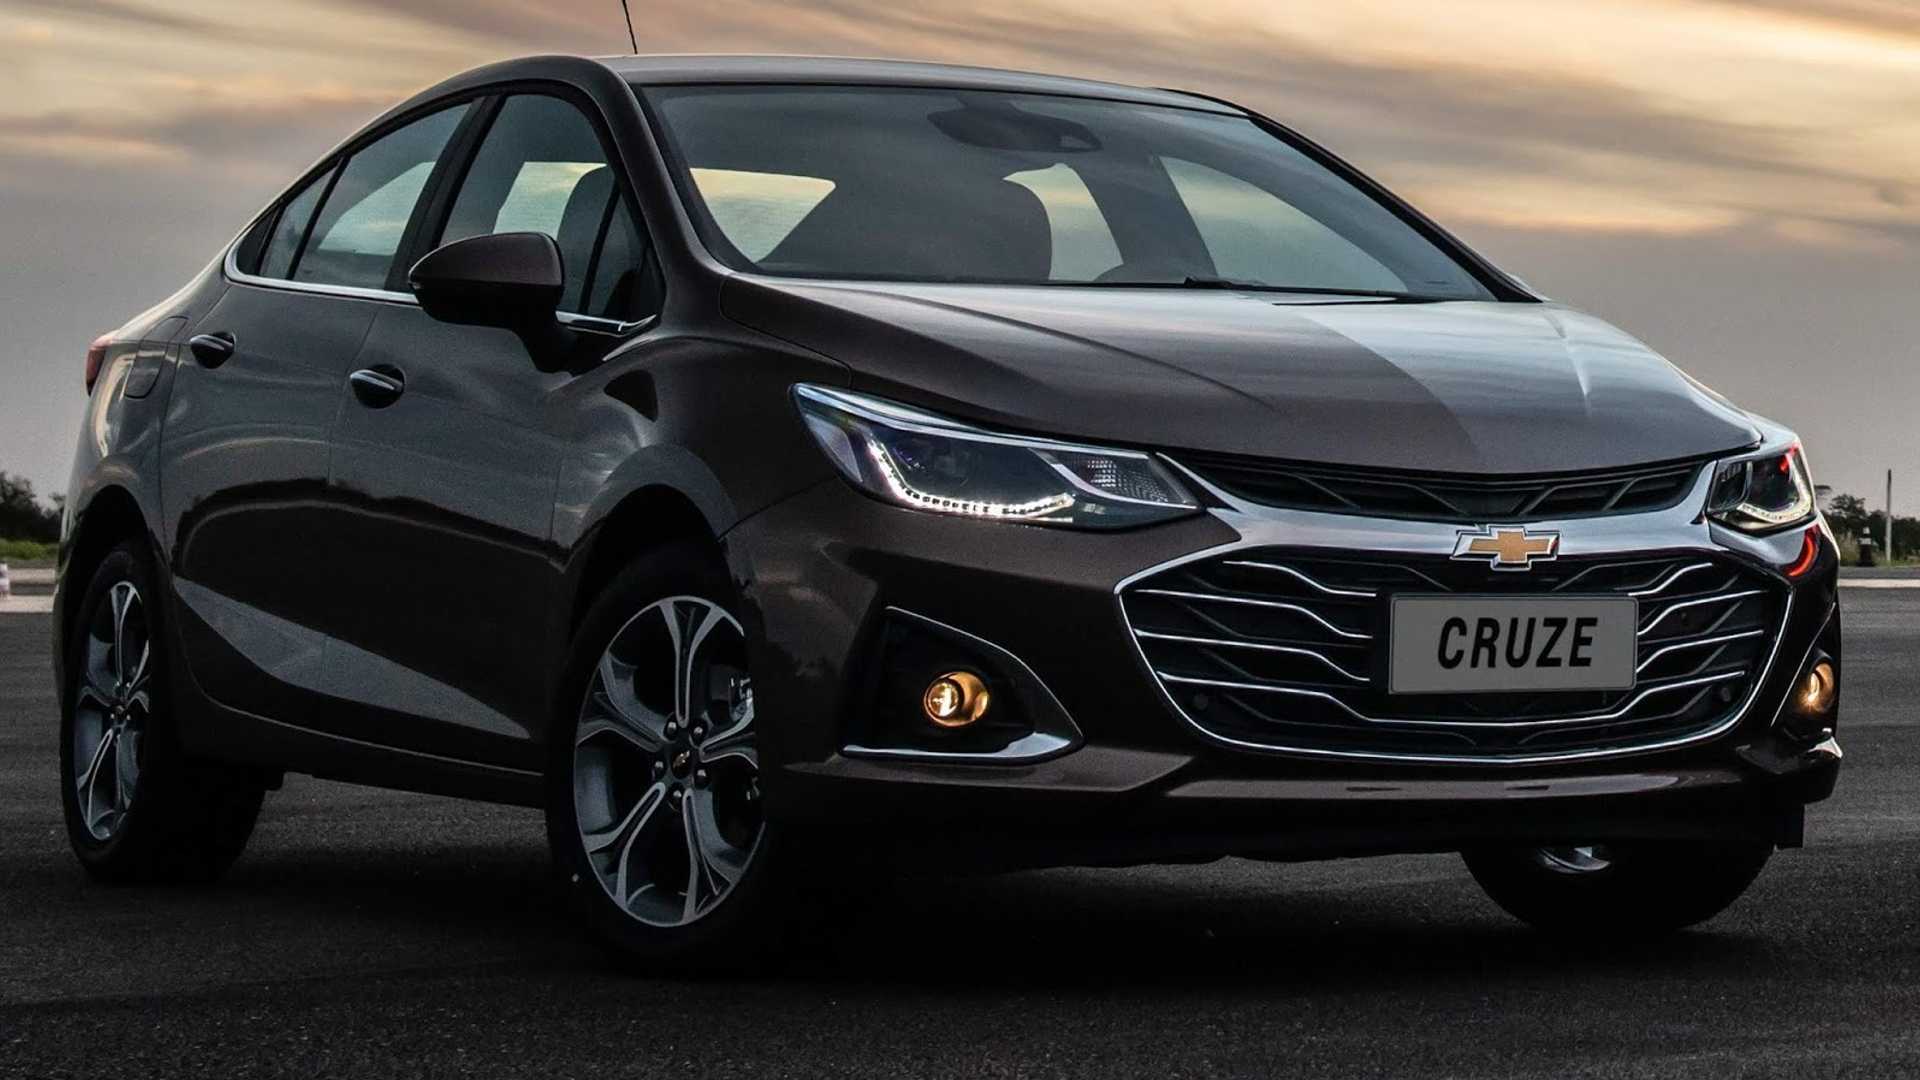 Chevrolet Cruze 2020 começa a ser vendido; veja preço e